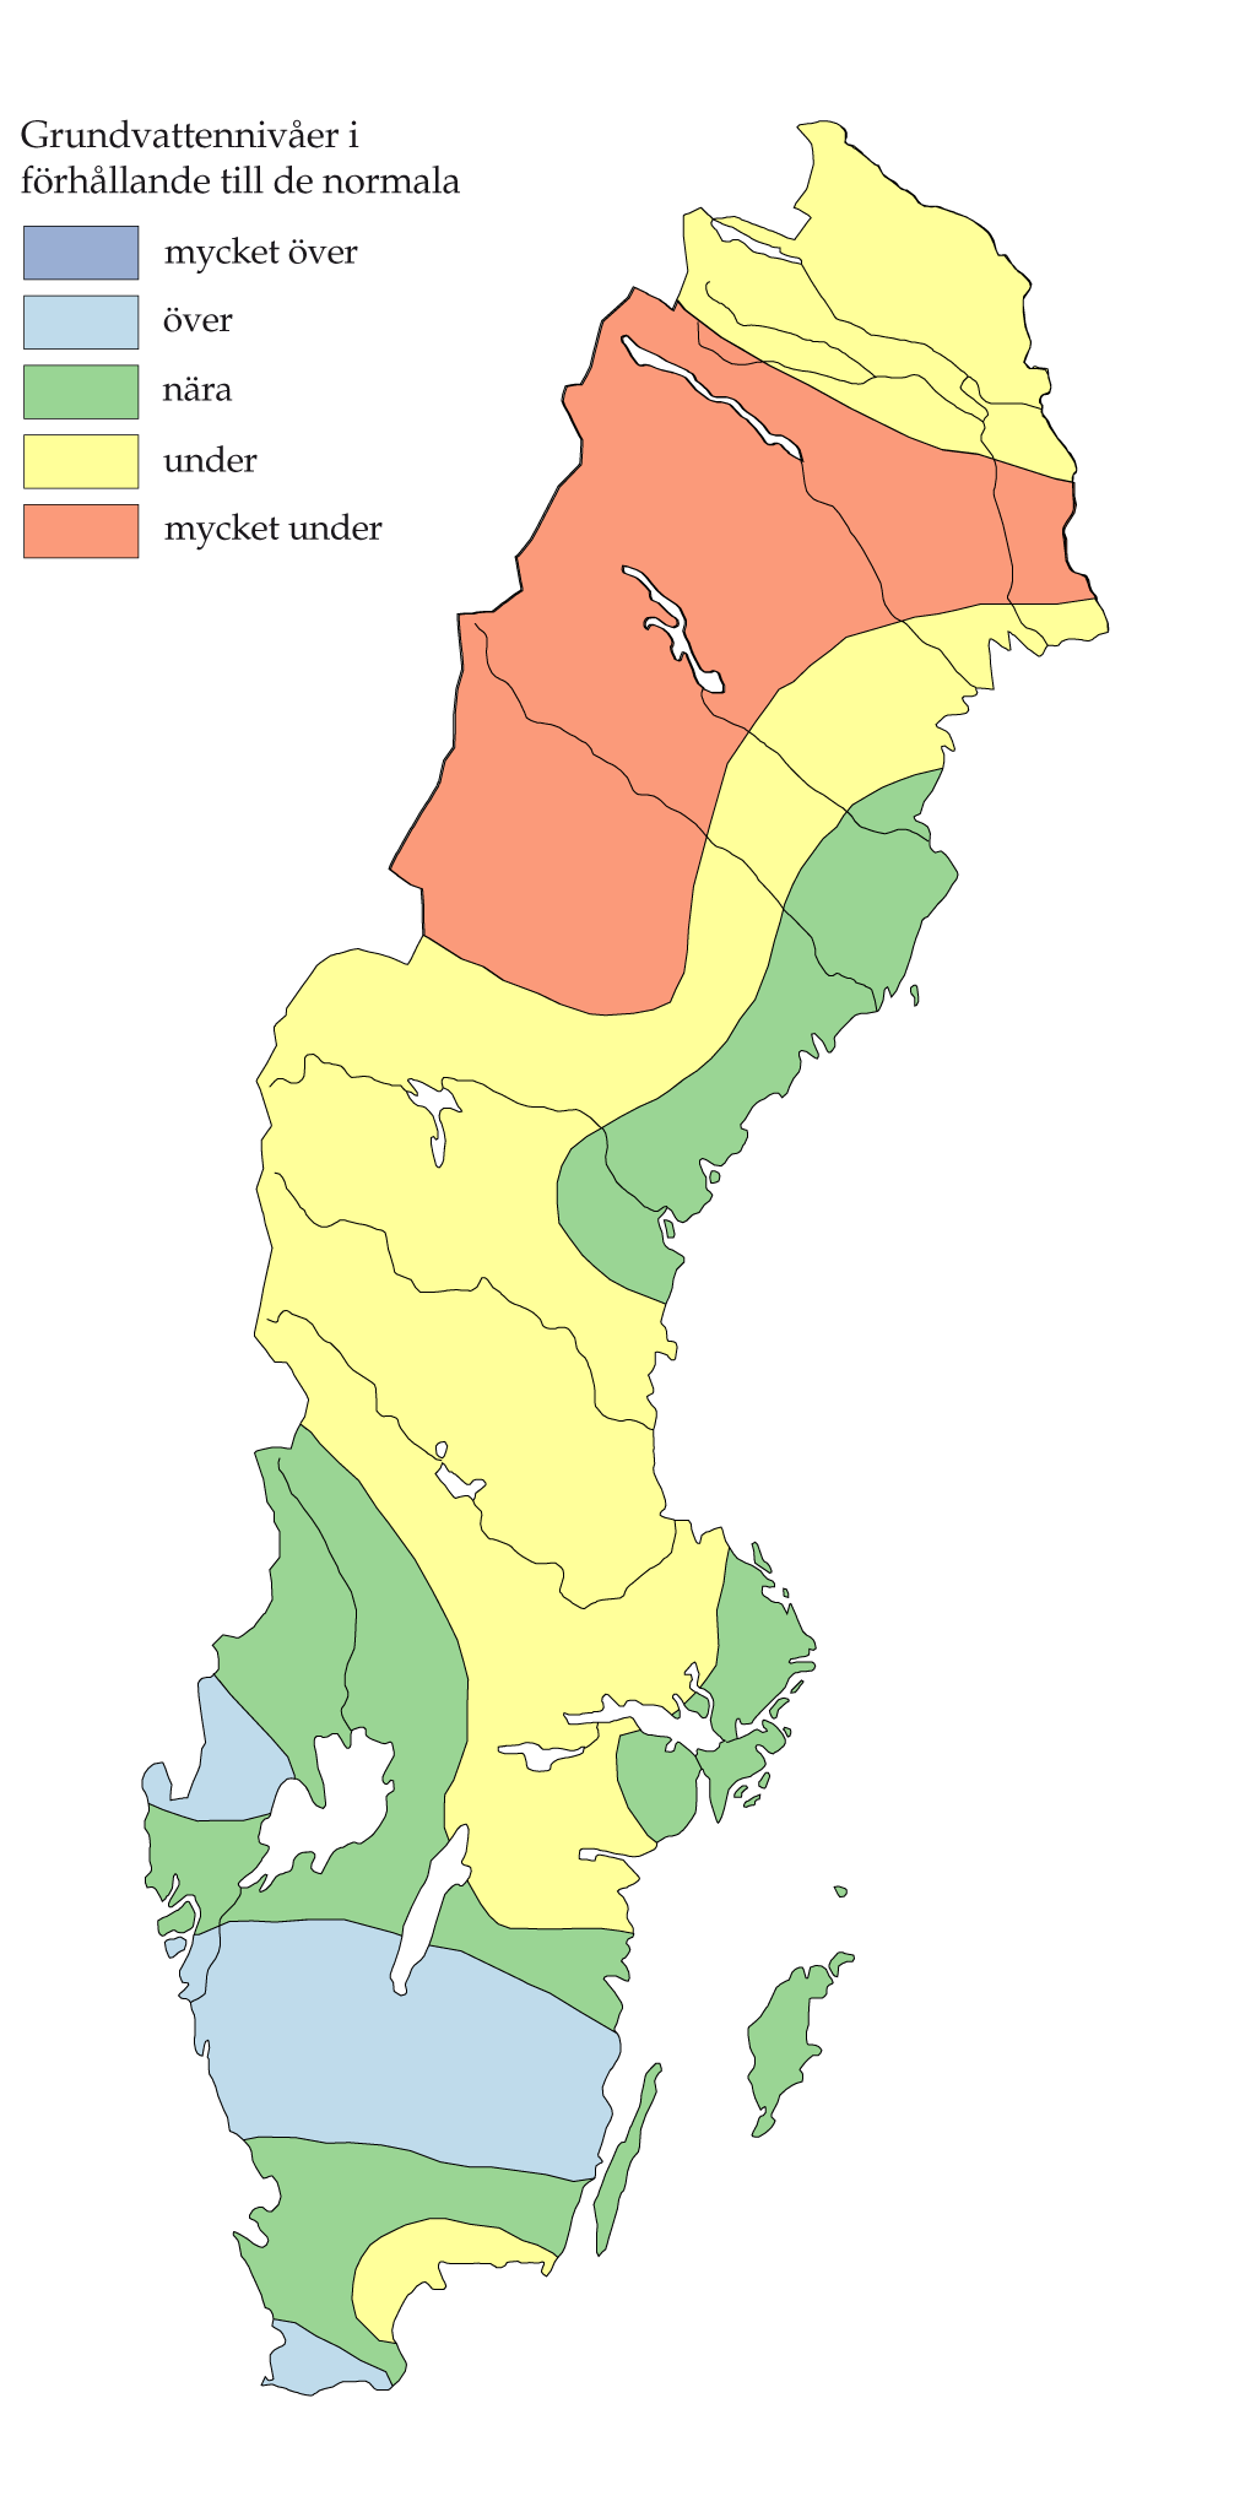 Oktober 2014 – Höga flöden i Bohuslän, Dalsland, Värmland och Dalarna